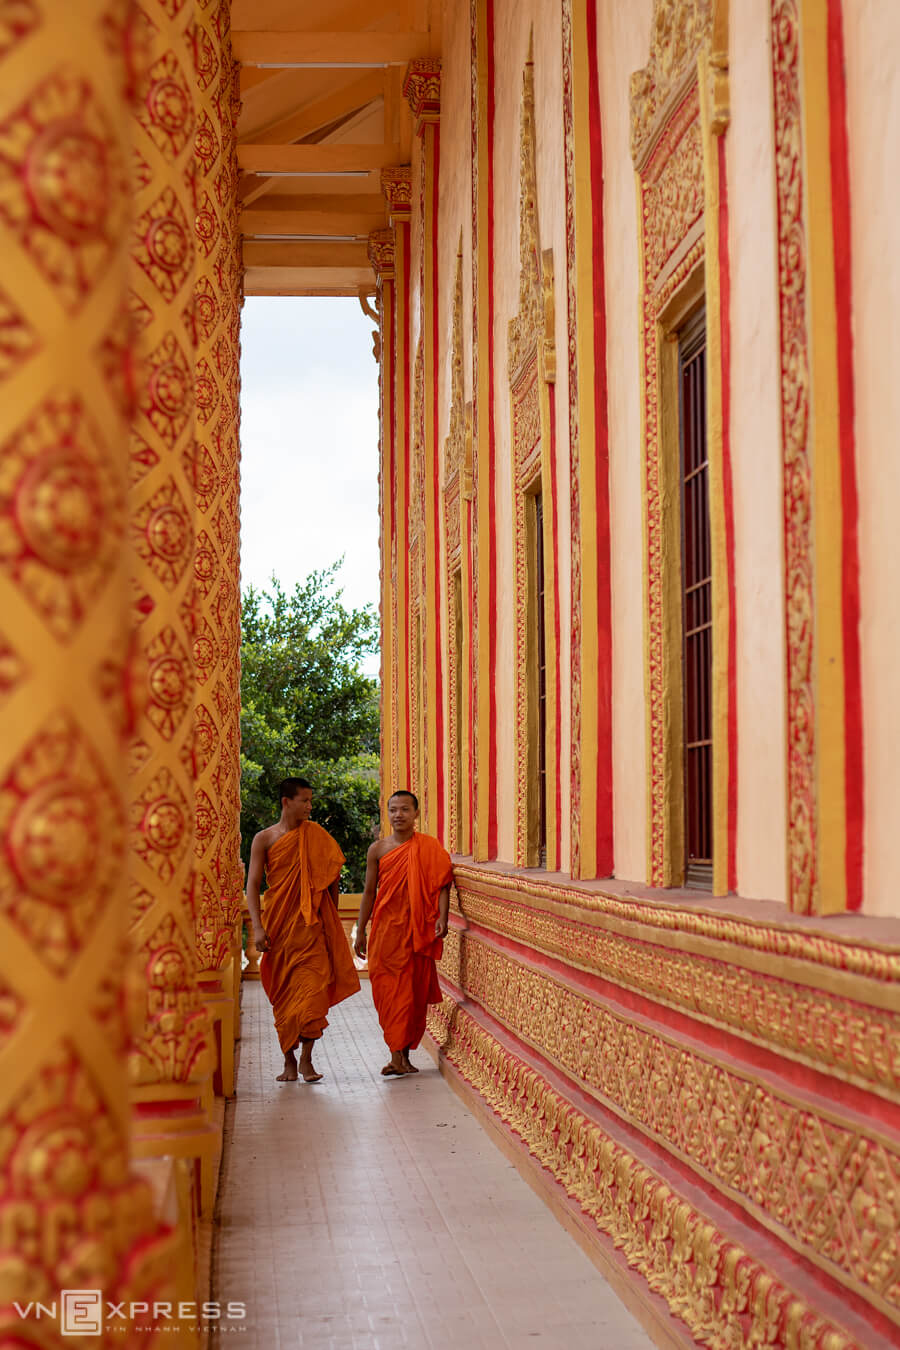 Chùa Xiêm Cán có kiến trúc độc đáo, và là nơi lưu giữ nhiều nét đẹp văn hóa trong đời sống tâm linh của đồng bào dân tộc người Khmer. Ở Nam Bộ, chùa ngôi chùa được xem là một trong những biểu tượng cho lối kiến trúc - văn hóa đặc sắc của người Khmer.